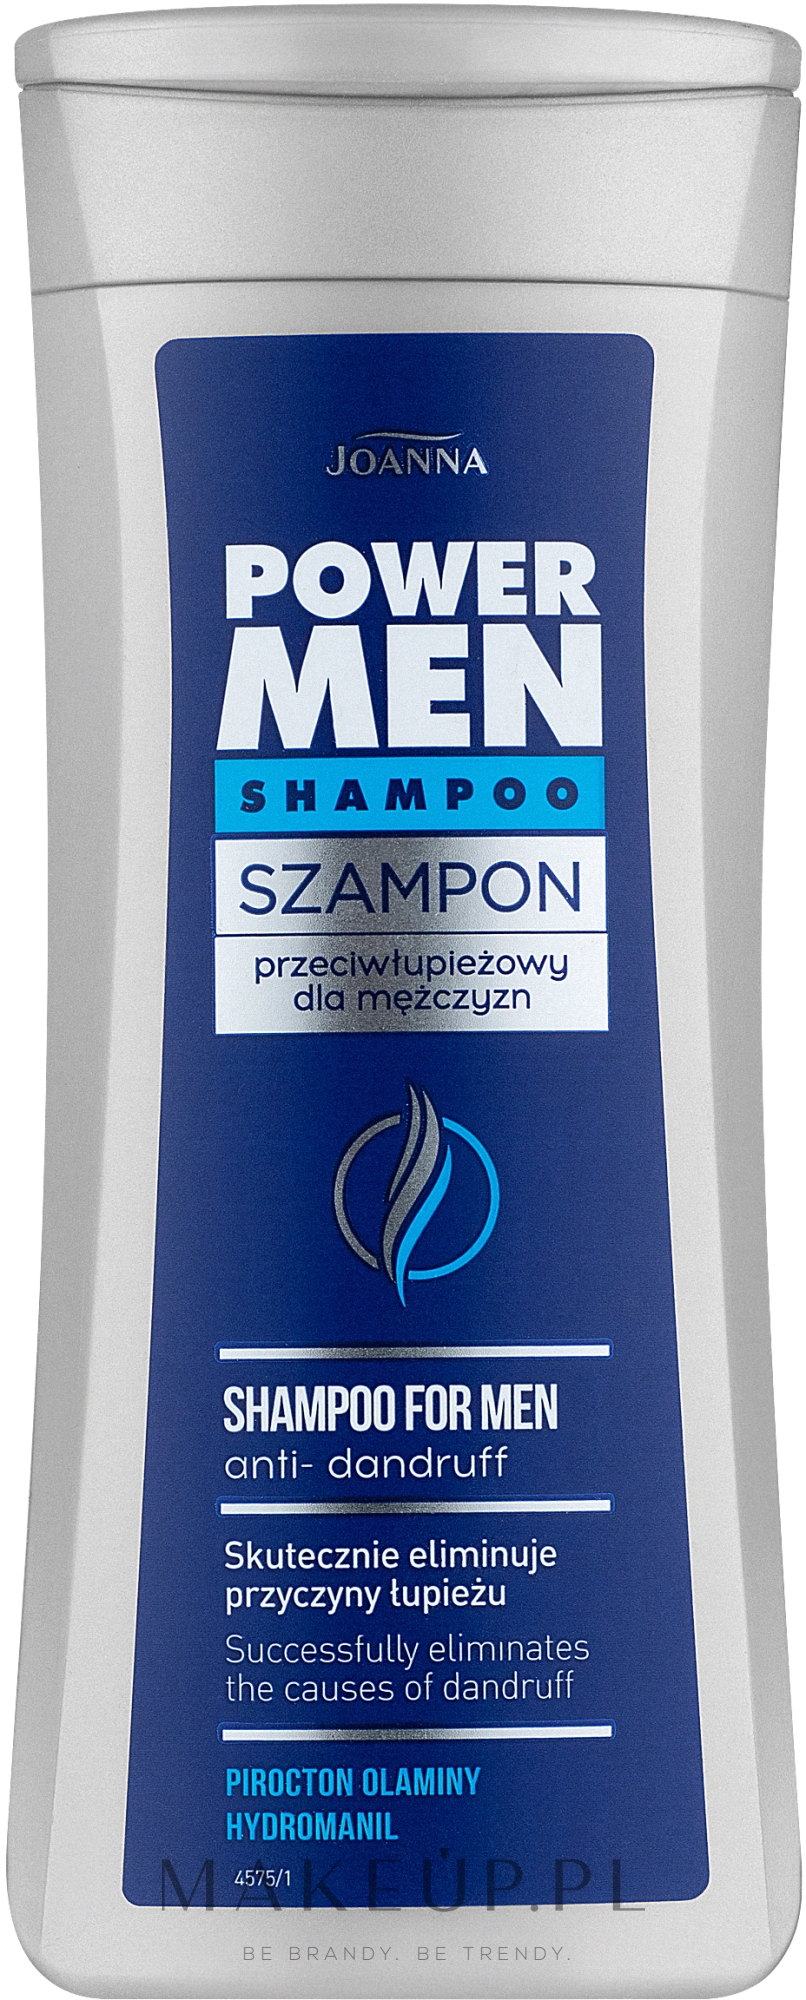 dobry szampon przeciwłupieżowy dla mezczyzn opinie